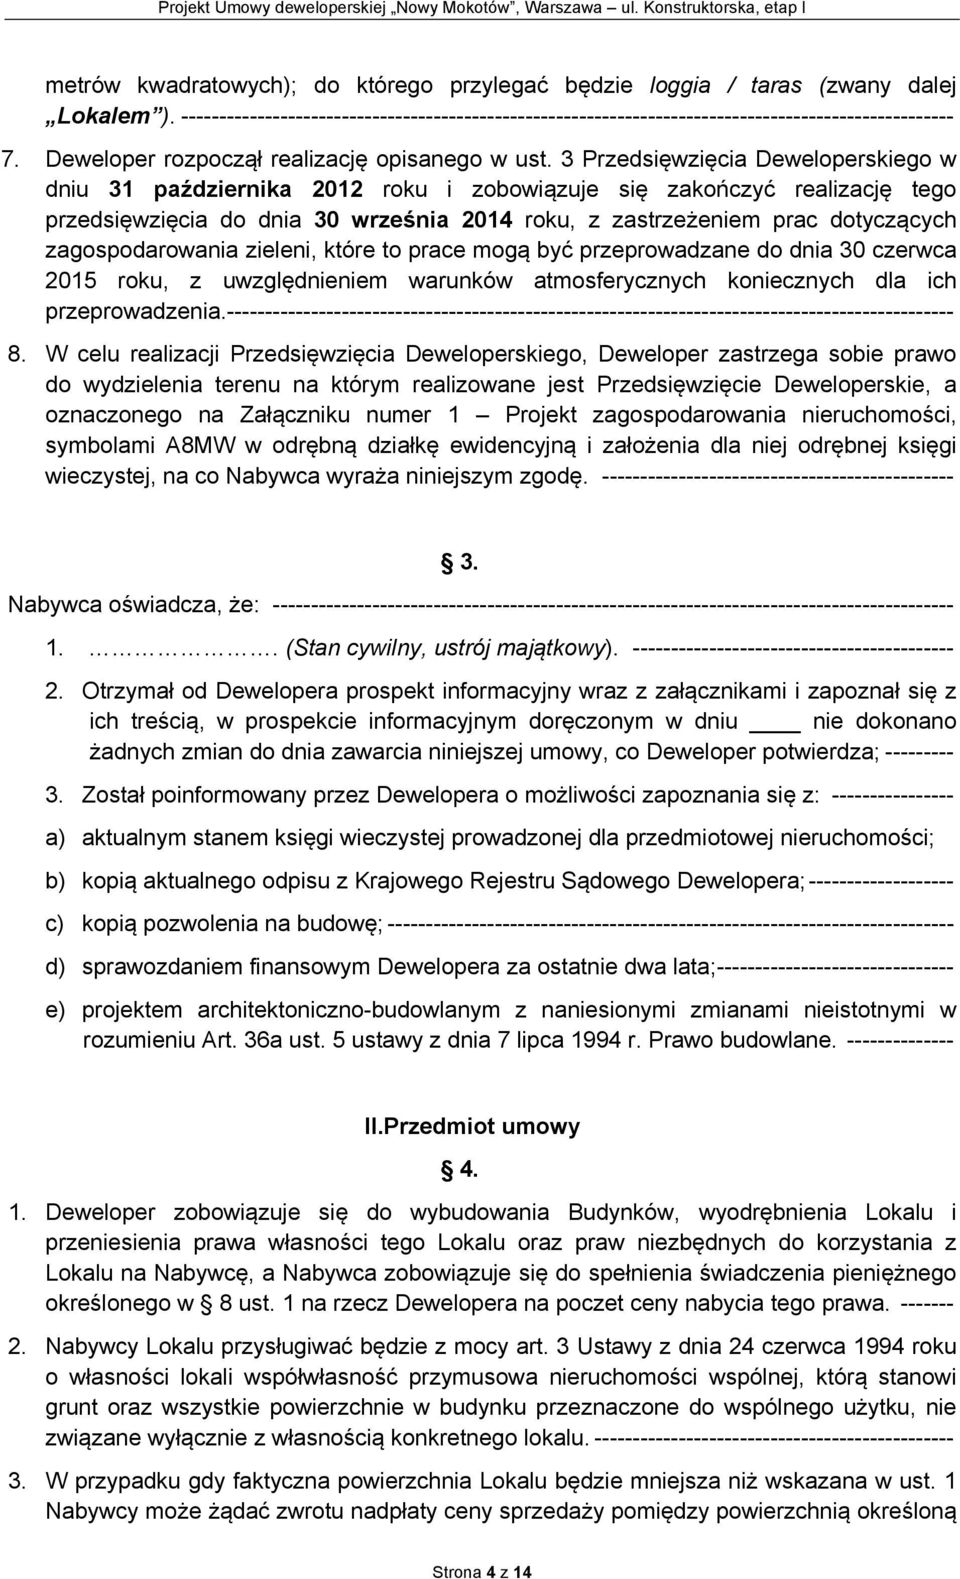 3 Przedsięwzięcia Deweloperskiego w dniu 31 października 2012 roku i zobowiązuje się zakończyć realizację tego przedsięwzięcia do dnia 30 września 2014 roku, z zastrzeżeniem prac dotyczących